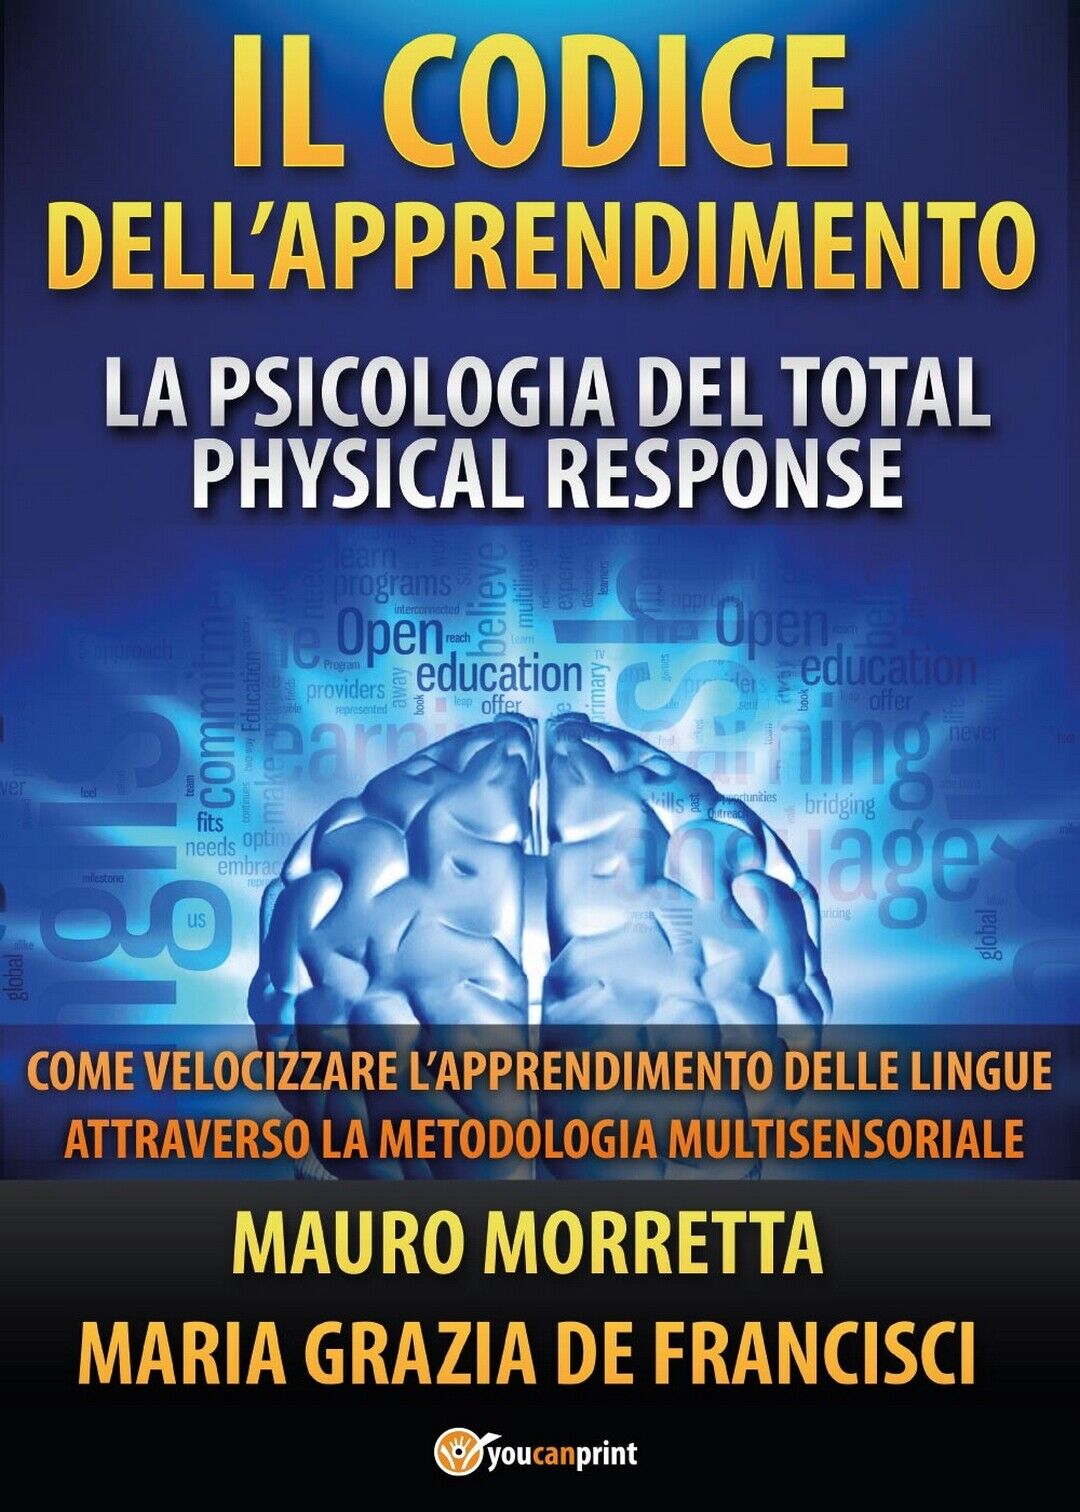 Il Codice delL'Apprendimento, Mauro Morretta, Maria Grazia De Francisci,  2017